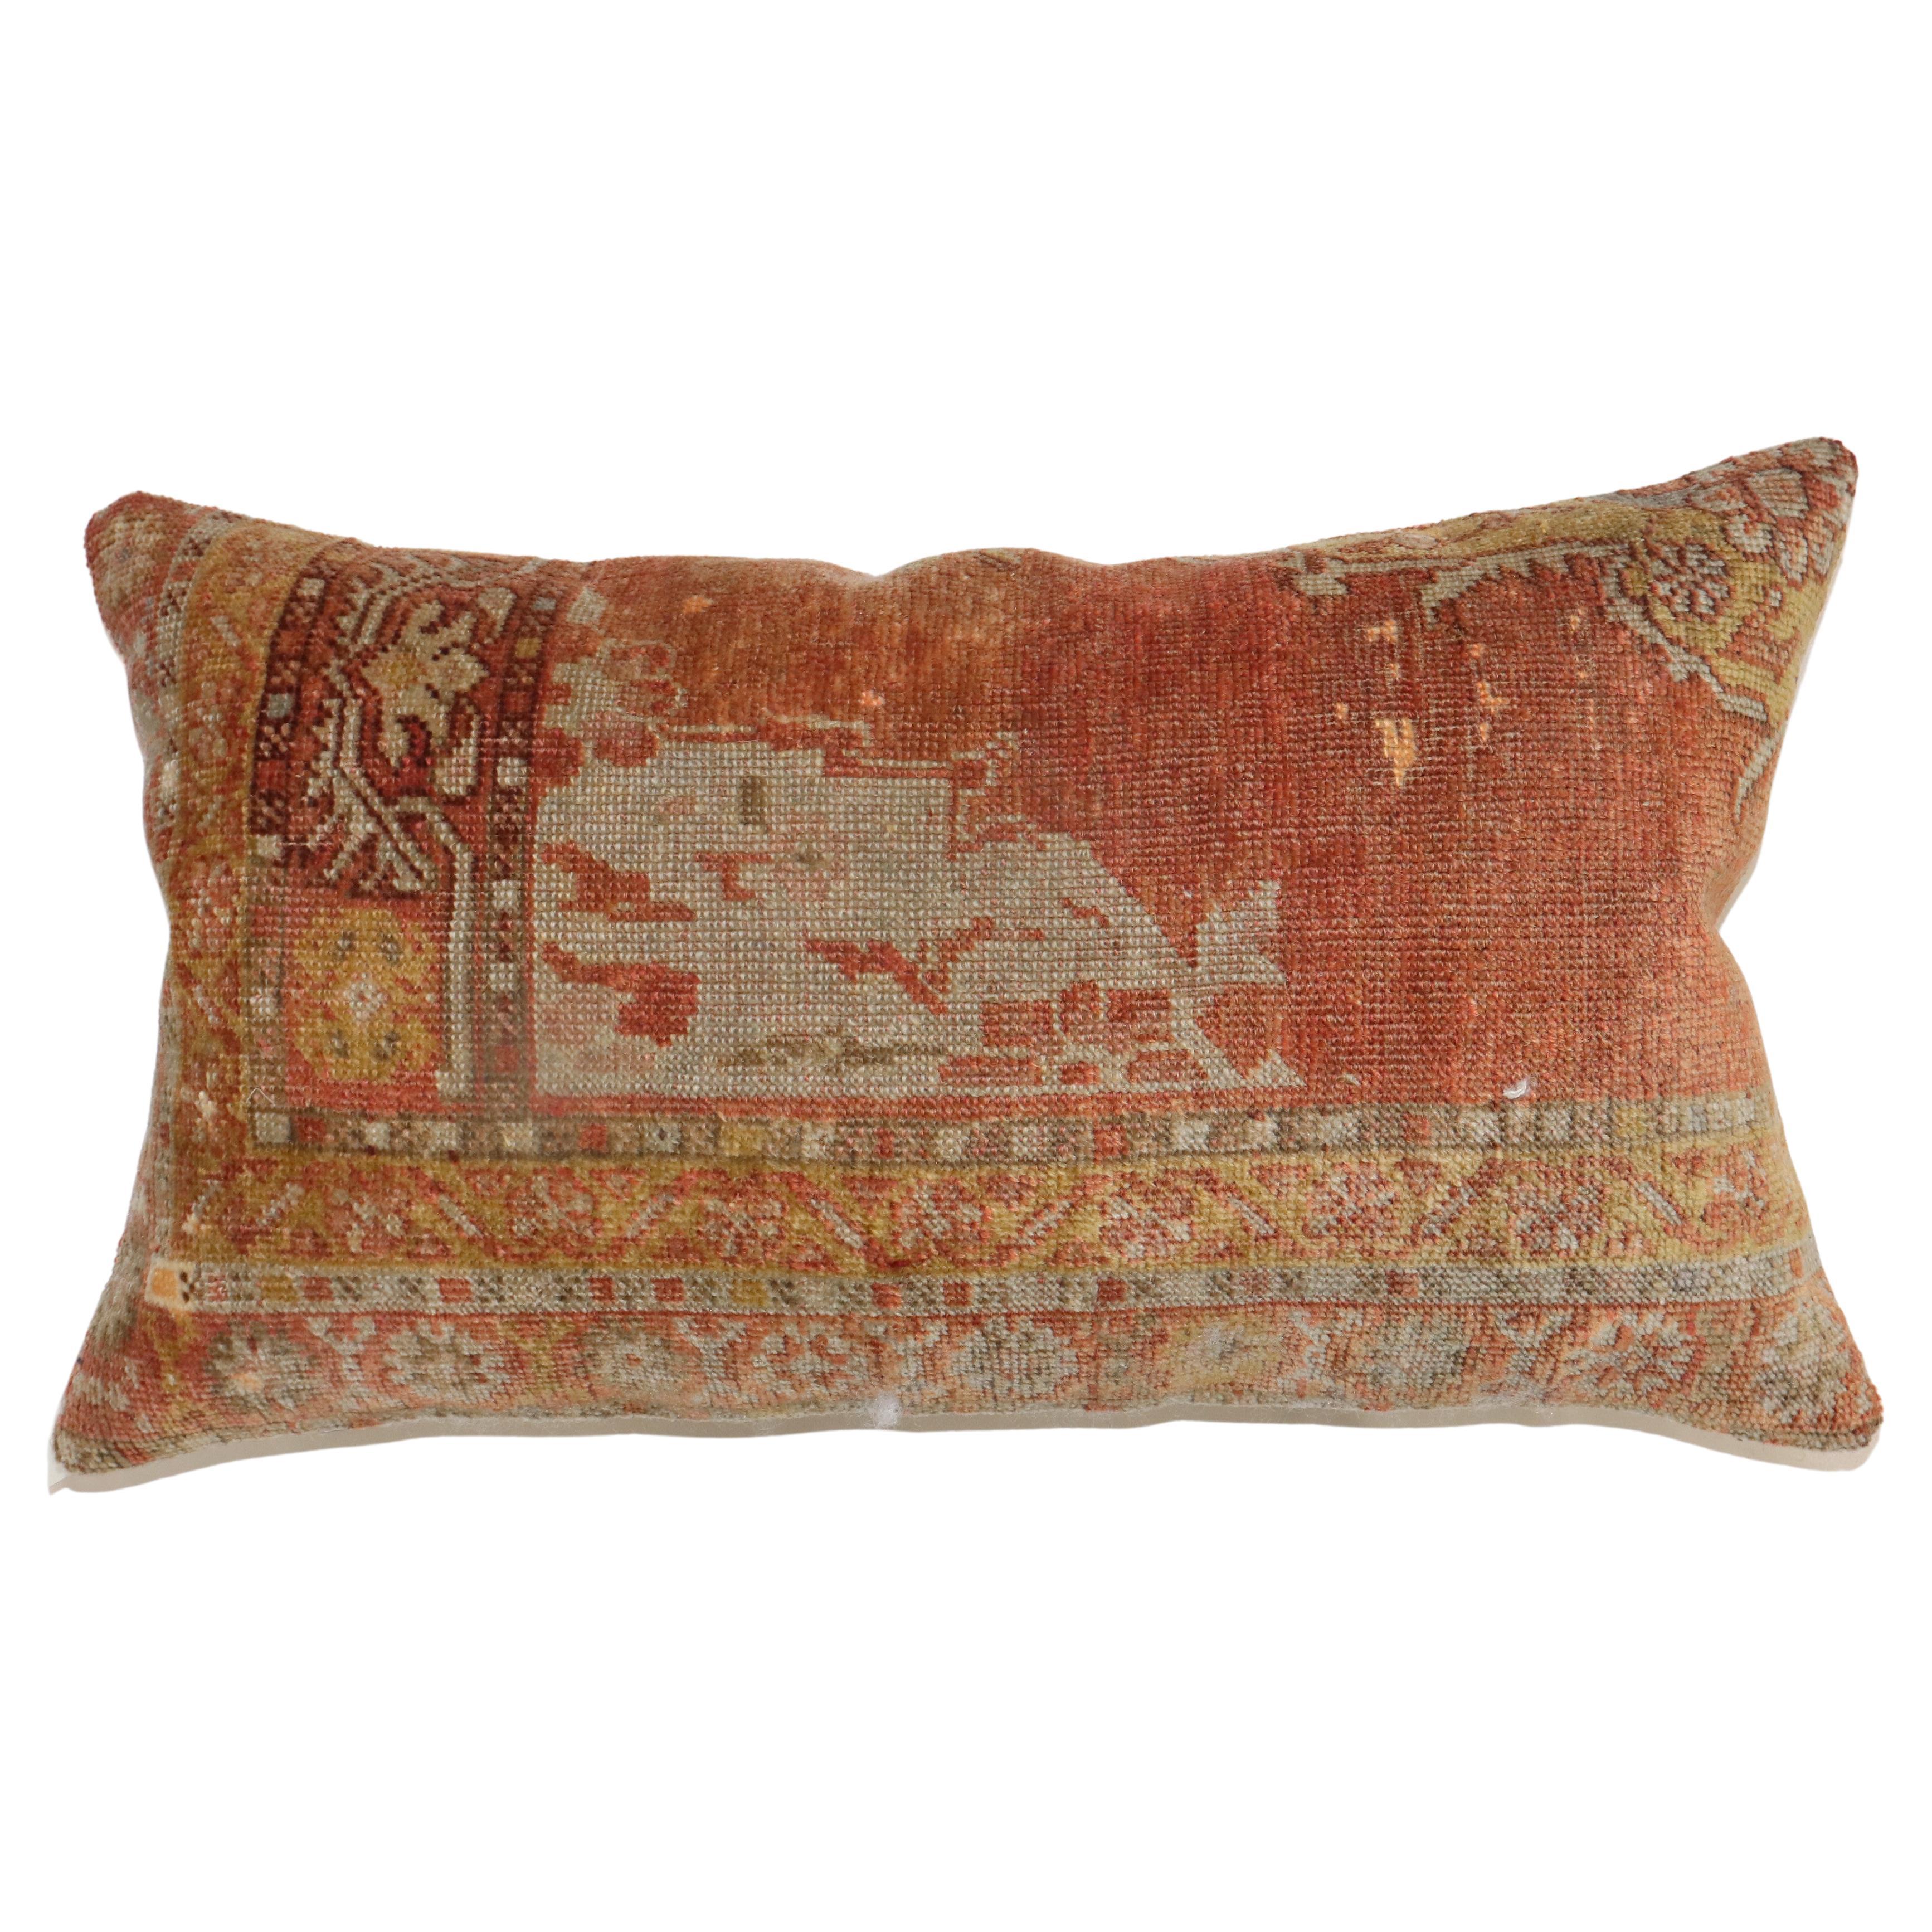 Large Antique Turkish Rug Pillow